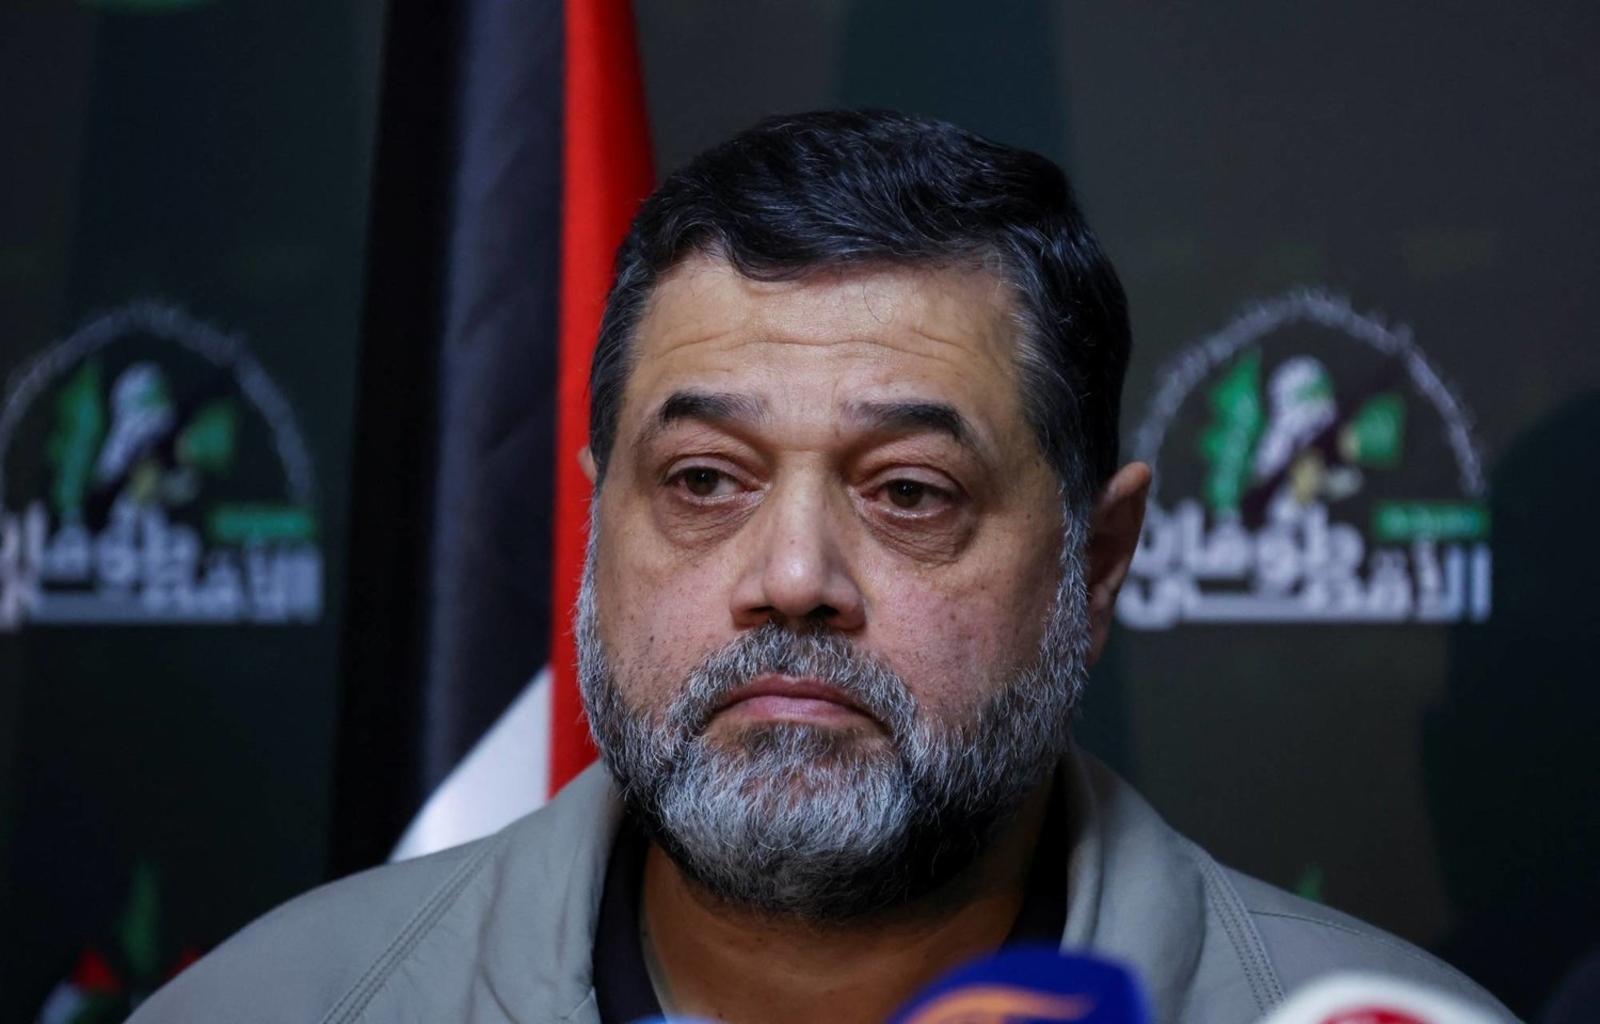 عضو المكتب السياسي لحركة حماس أسامة حمدان يحذر من التعاطي مع مخطط الاحتلال لتهجير الفلسطينيين من قطاع غزة ويشكف عن مقترحات حول تبادل الأسرى